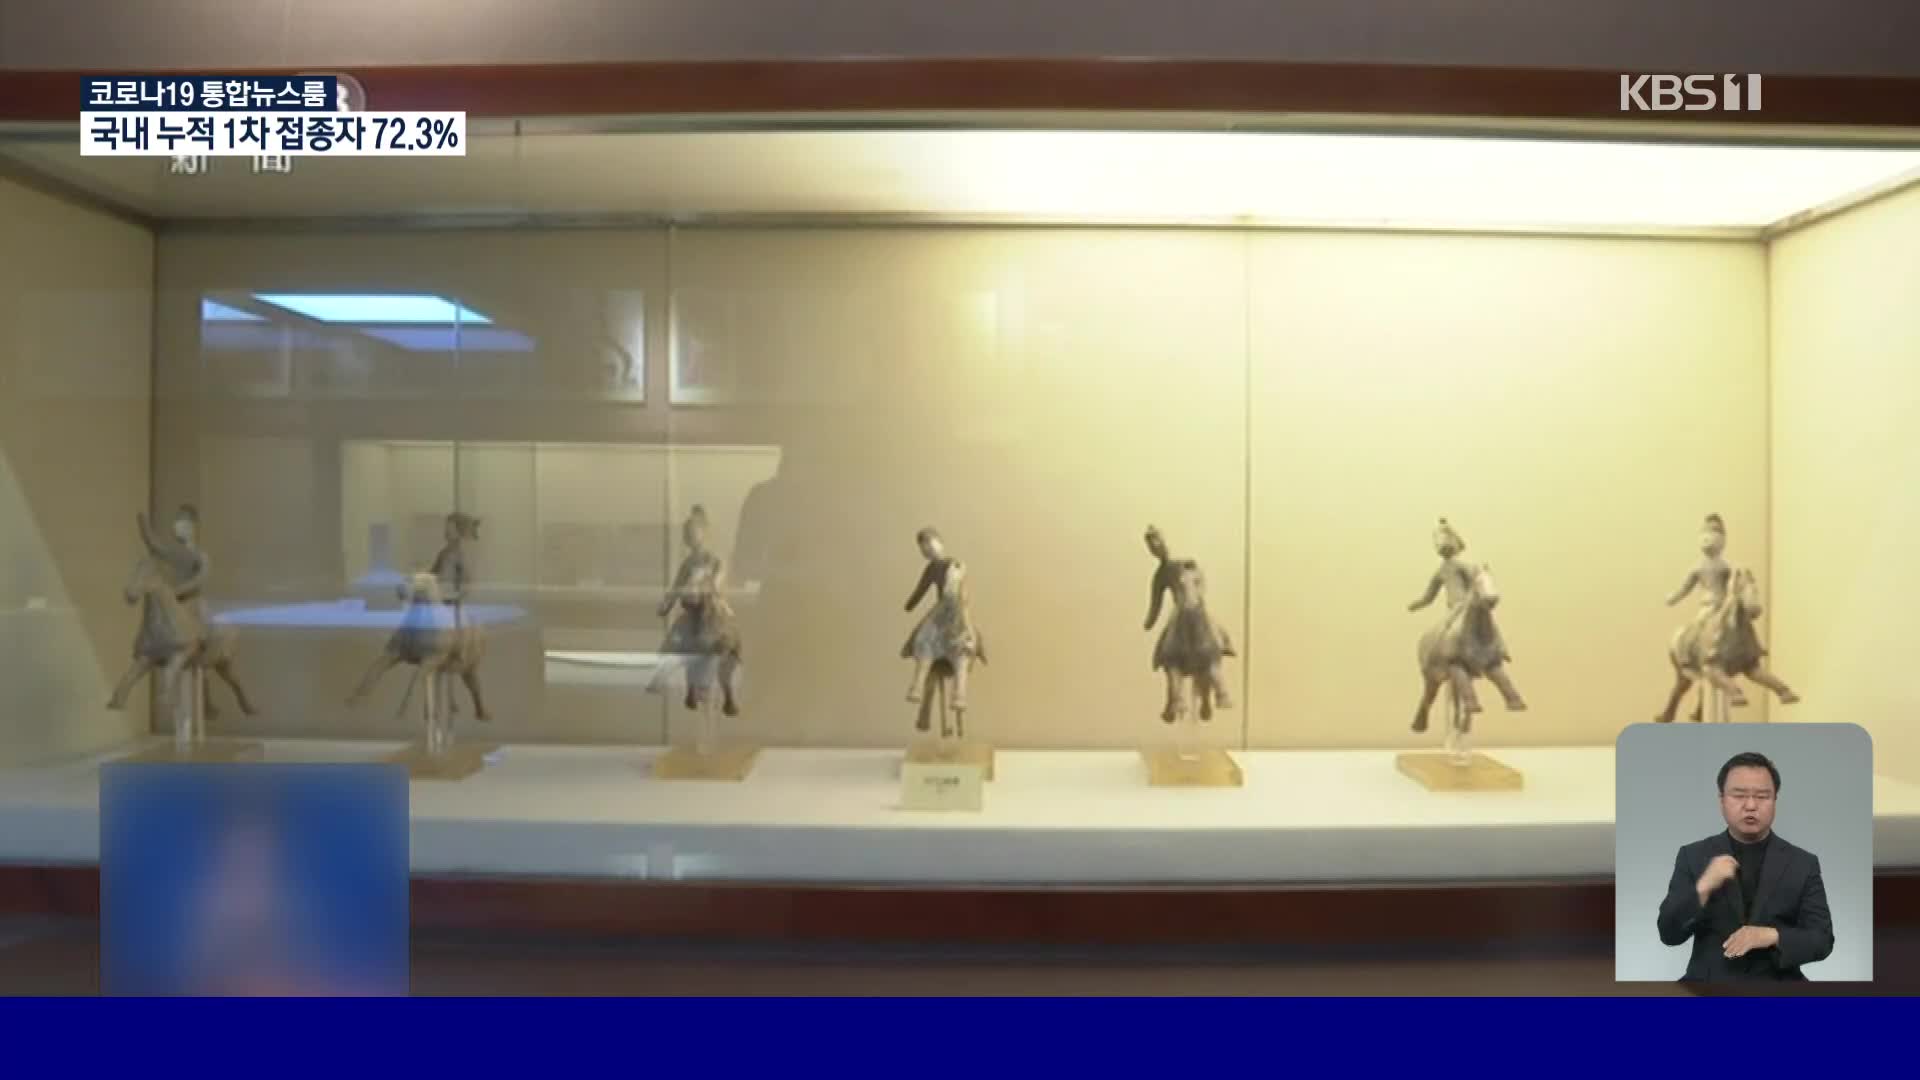 고대 중국인들의 고대 스포츠 역사를 한눈에!